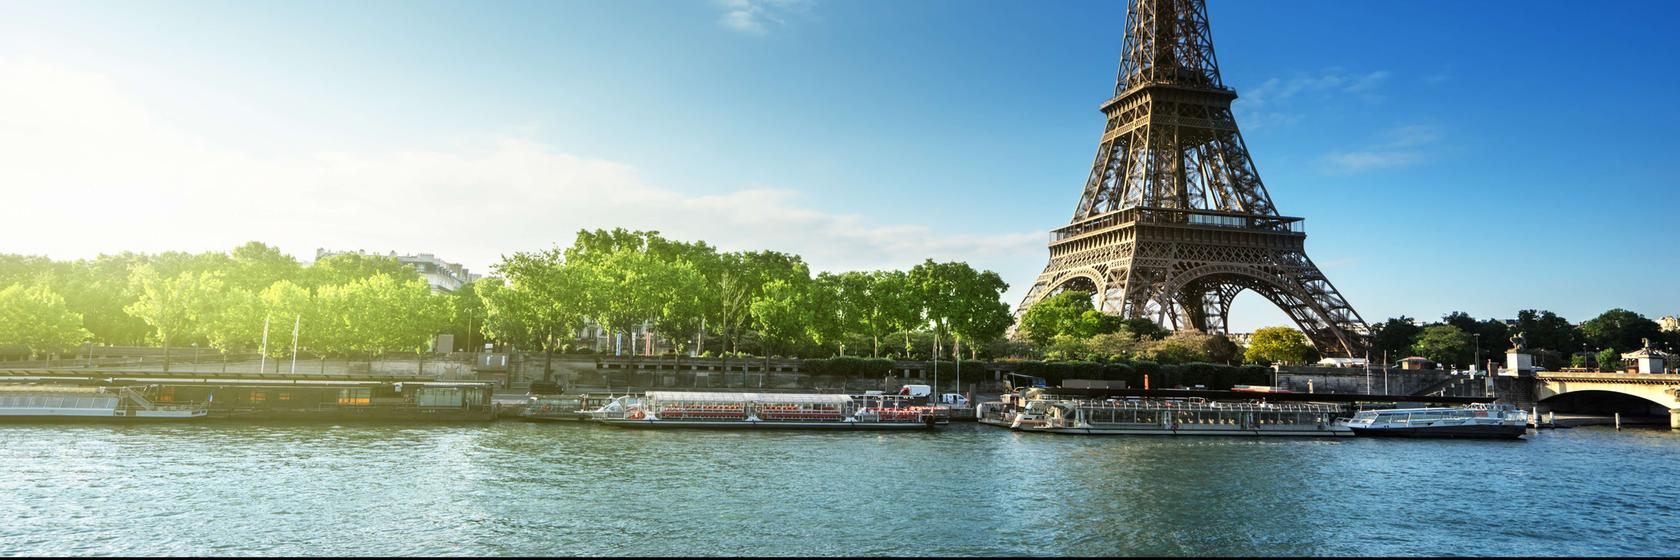 Zábava a volný čas v Paříži a okolí